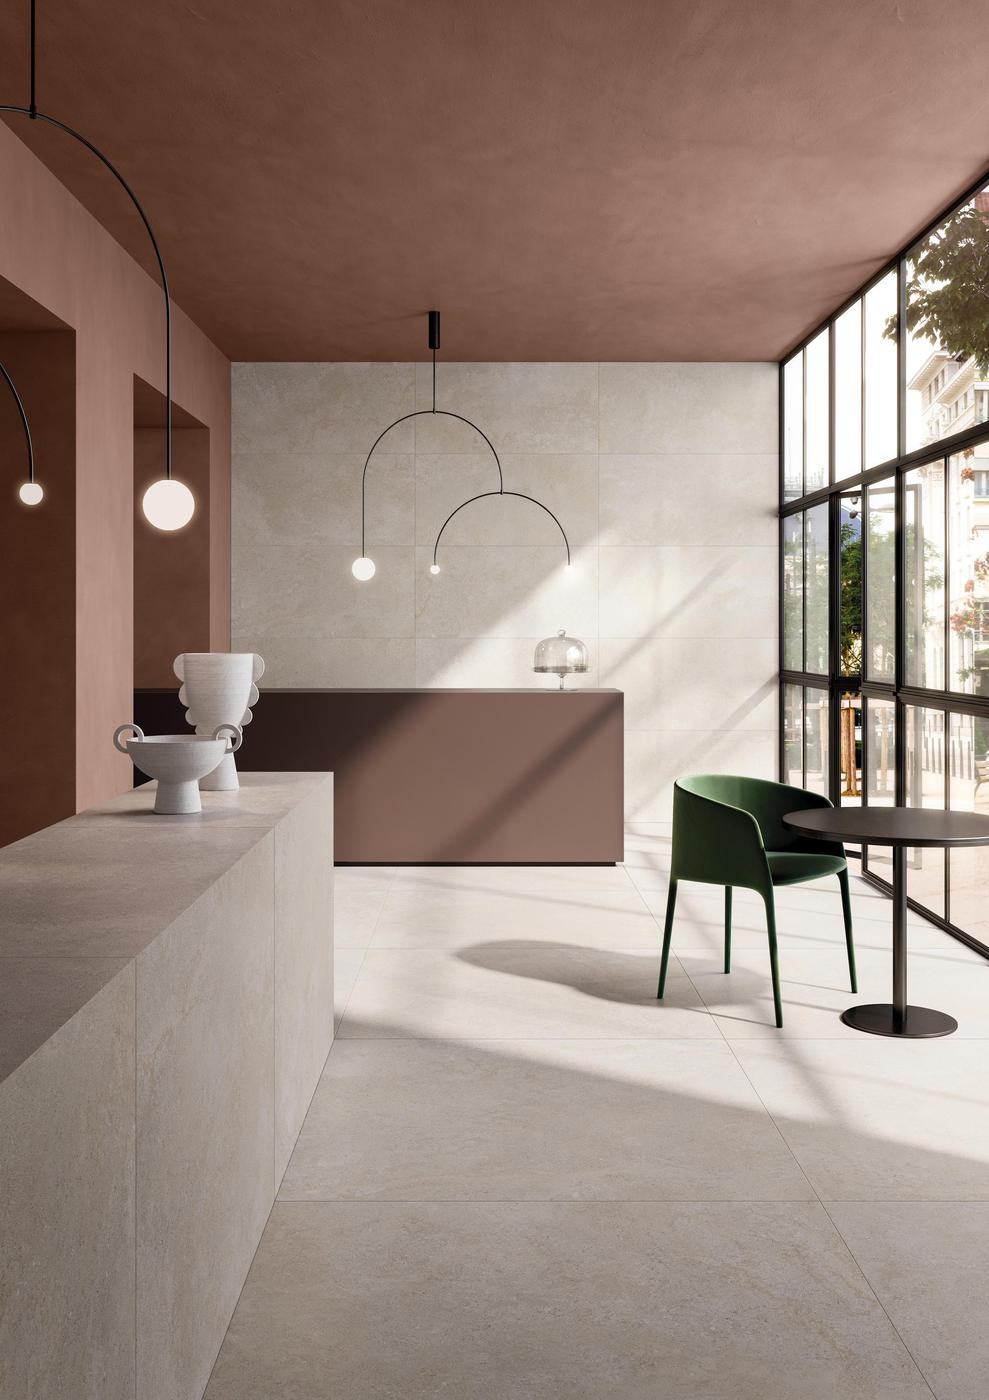 Carrelage effet pierre blanc marbré 80x80 cm dans un salon aux murs terre cuite avec mobilier moderne et éclairage élégant